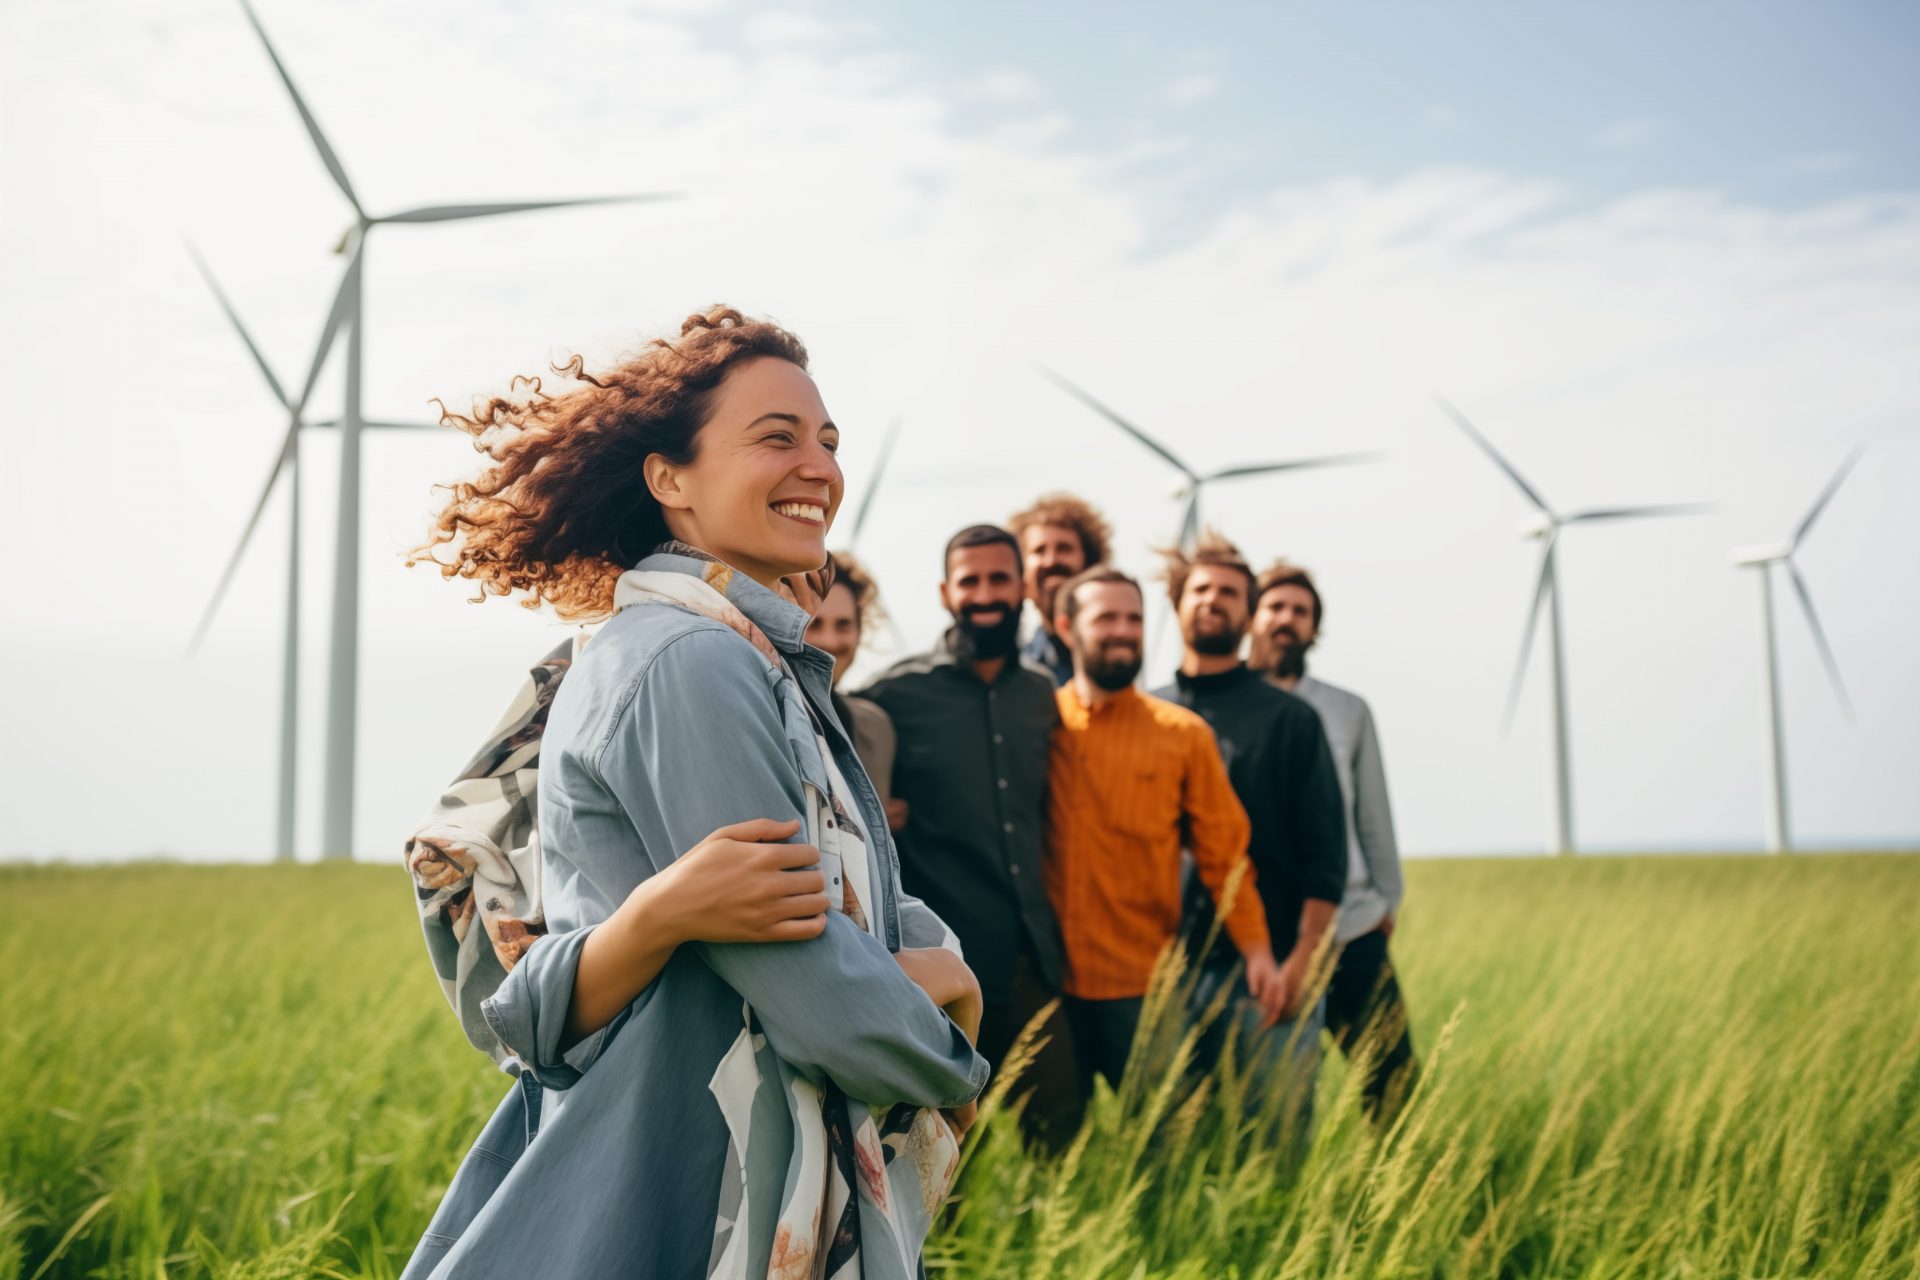 Un grupo de personas sonrientes en un campo verde, con turbinas eólicas al fondo.